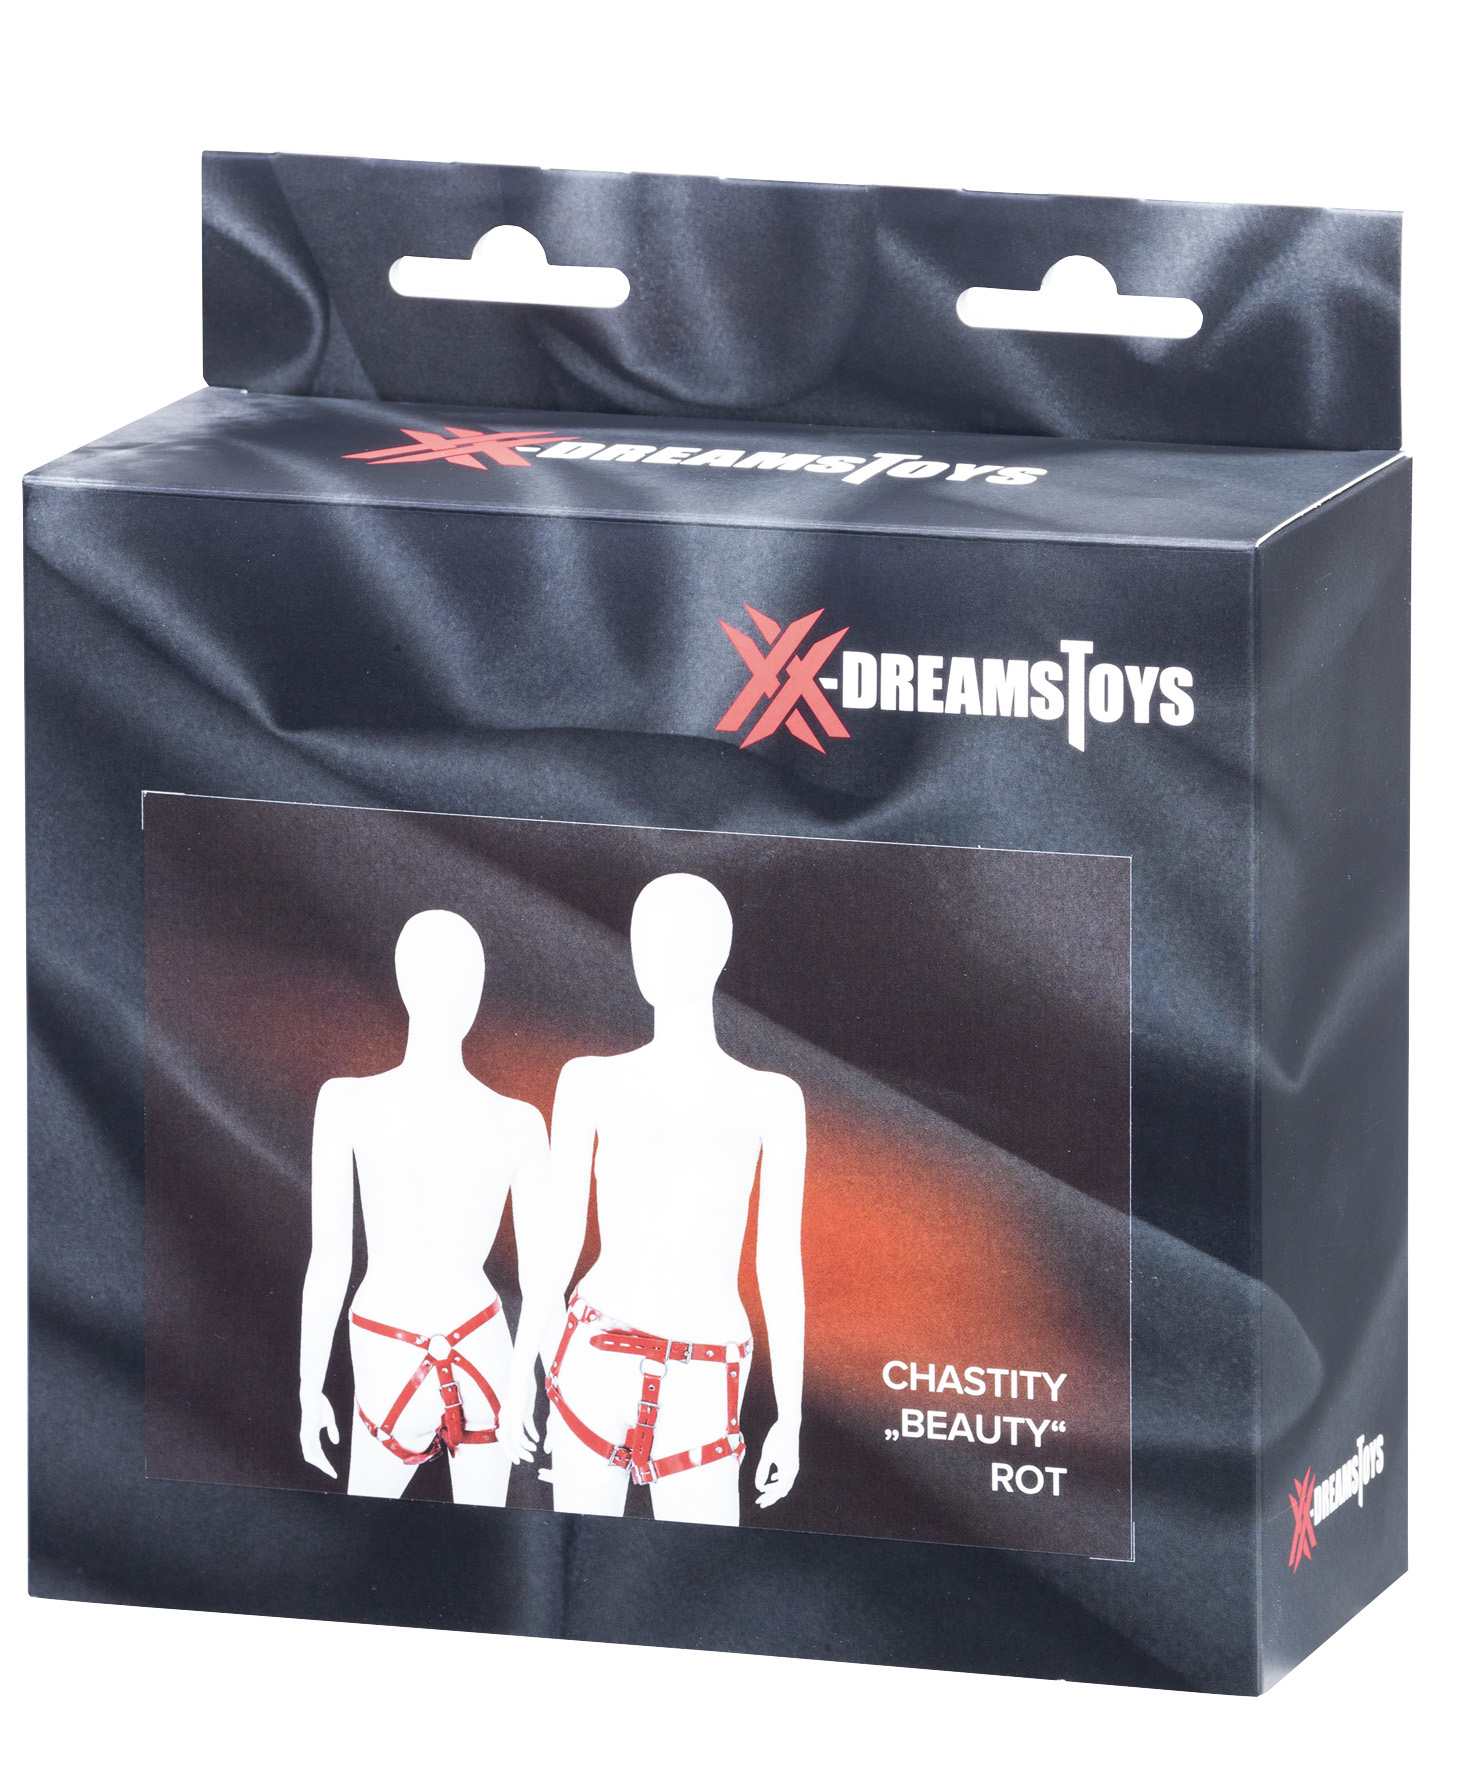 XX-DREAMSTOYS Chastity "Beauty" rot